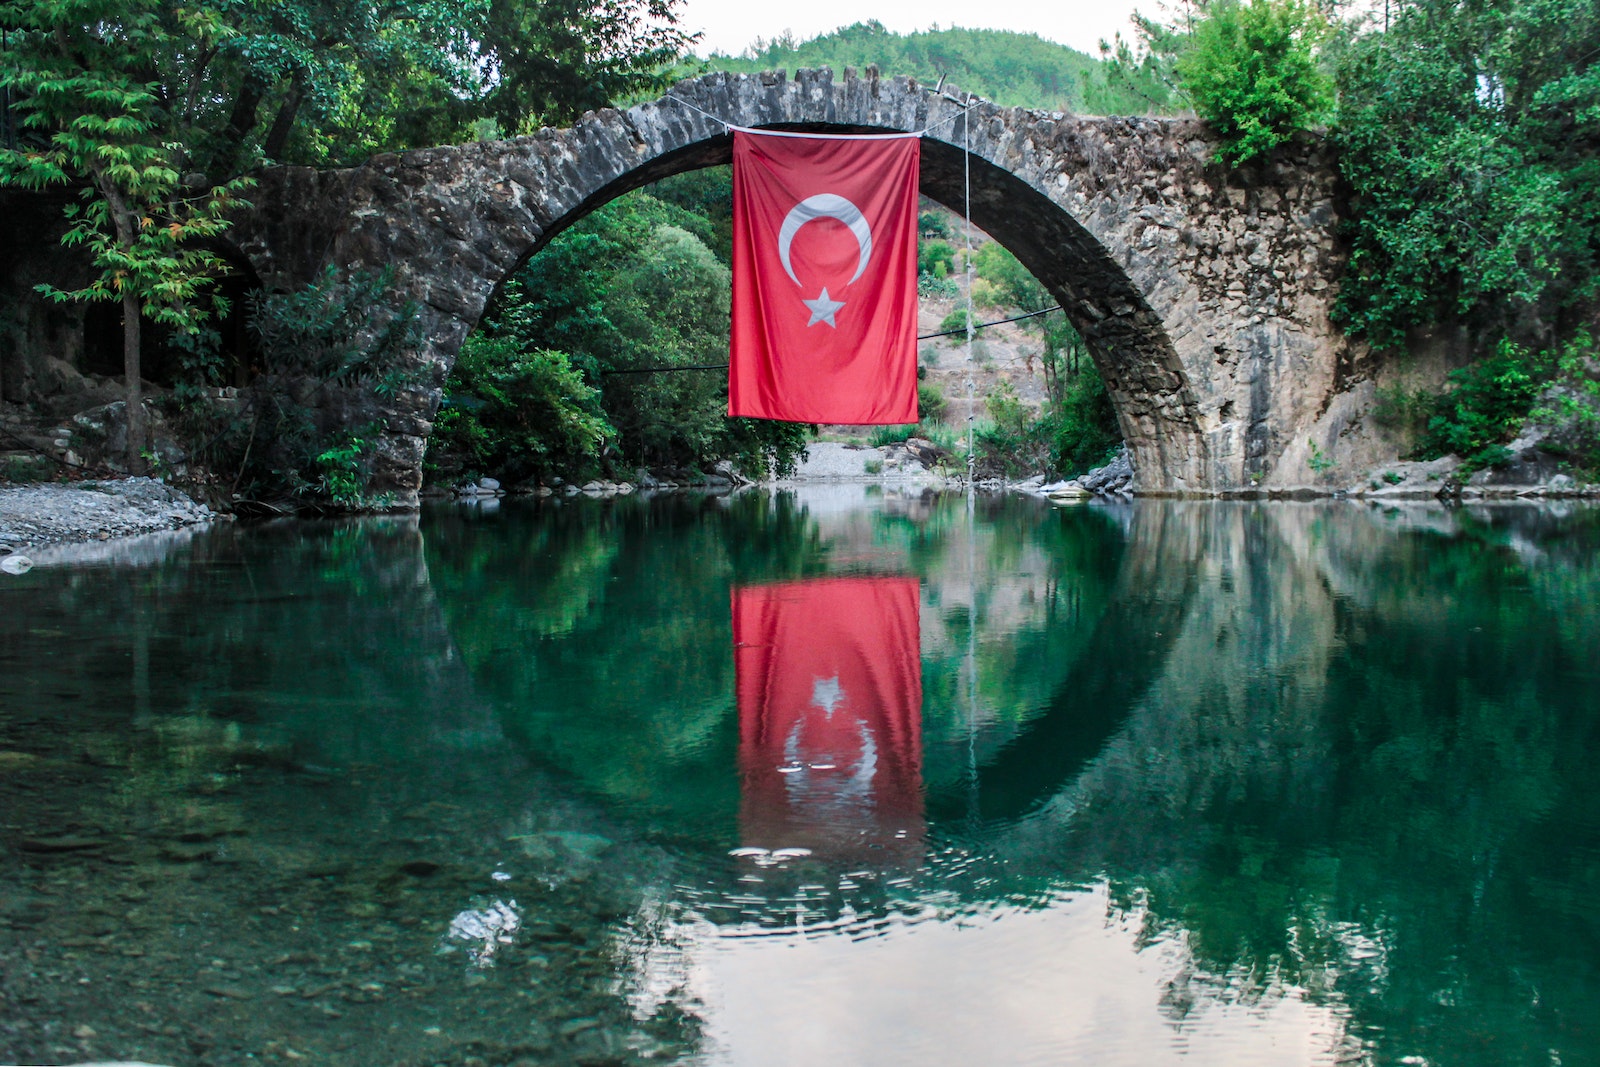 Un rêve de voyage en Europe sans visa au coeur des prochaines élections turques